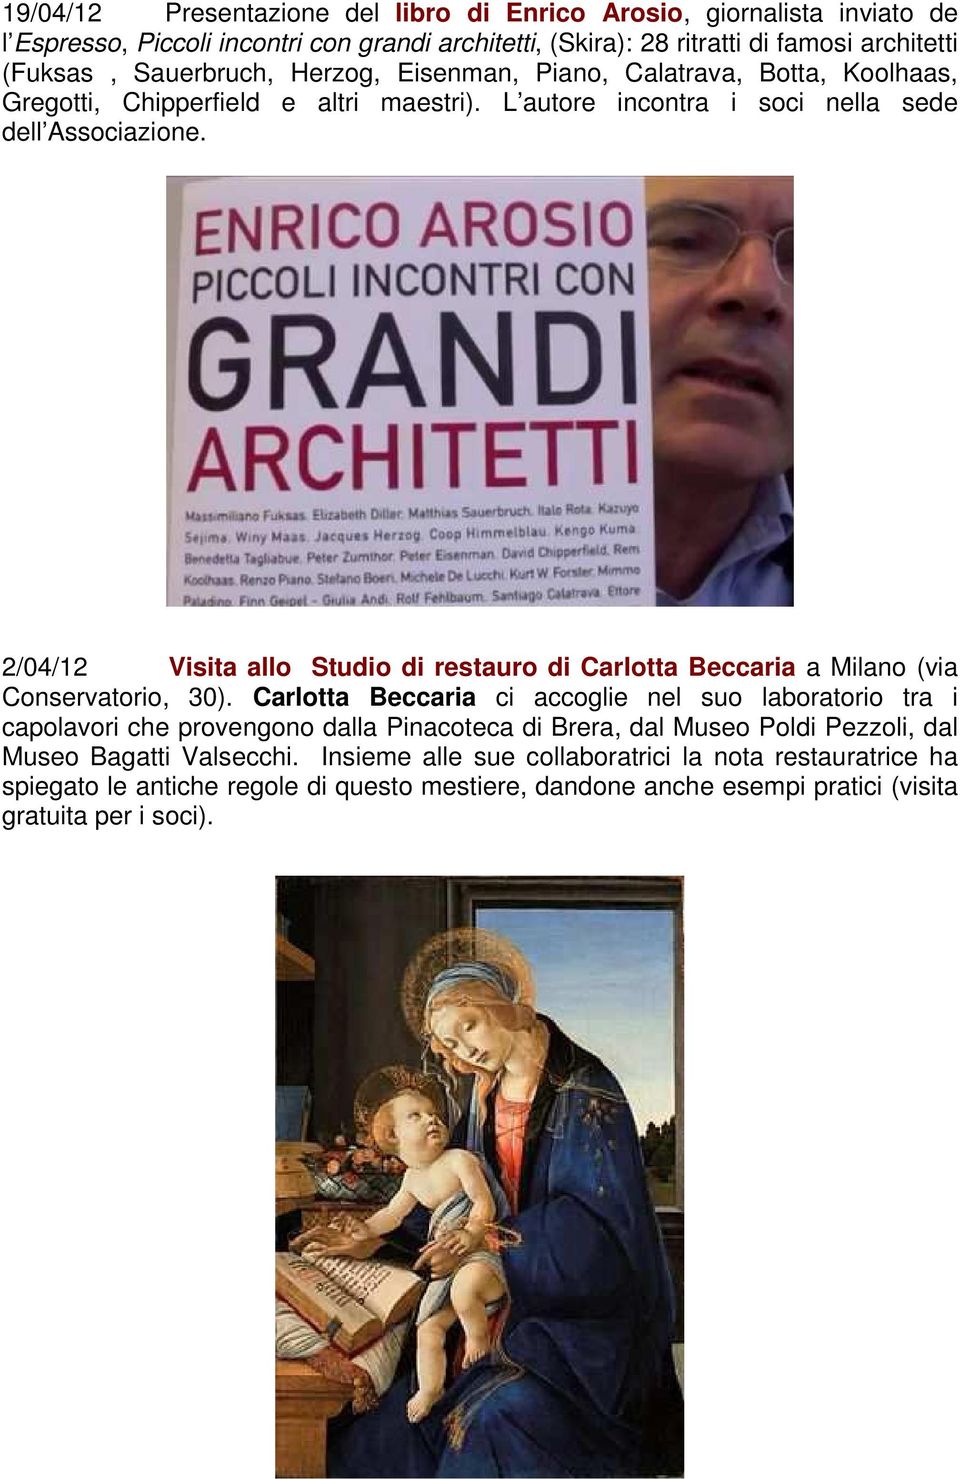 2/04/12 Visita allo Studio di restauro di Carlotta Beccaria a Milano (via Conservatorio, 30).